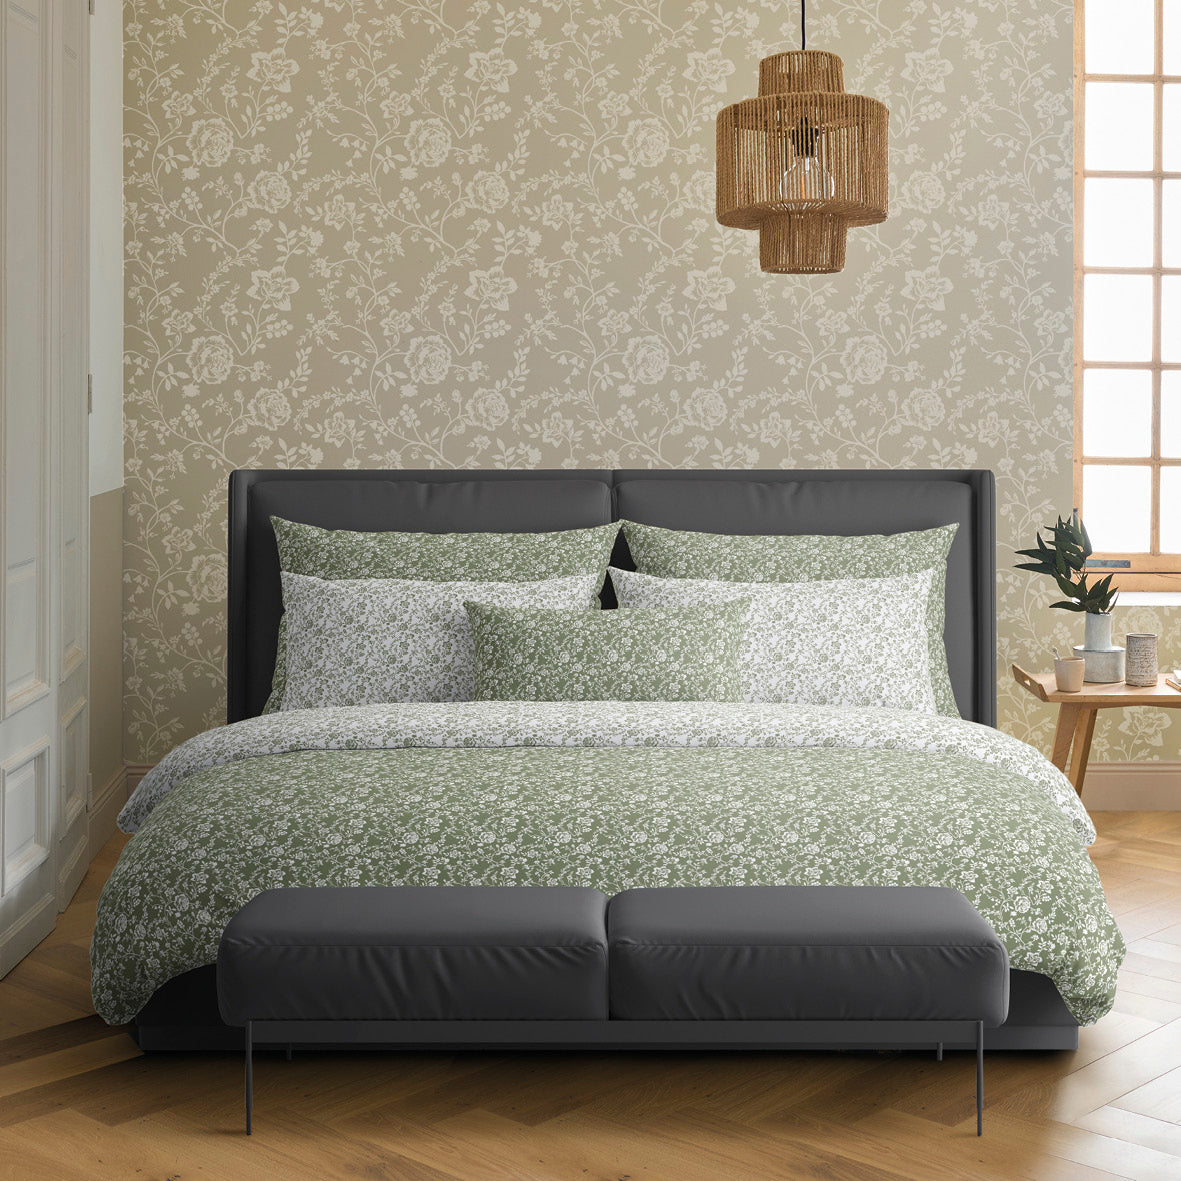 Set of 2 pillowcases cotton satin - Parterre de Roses green